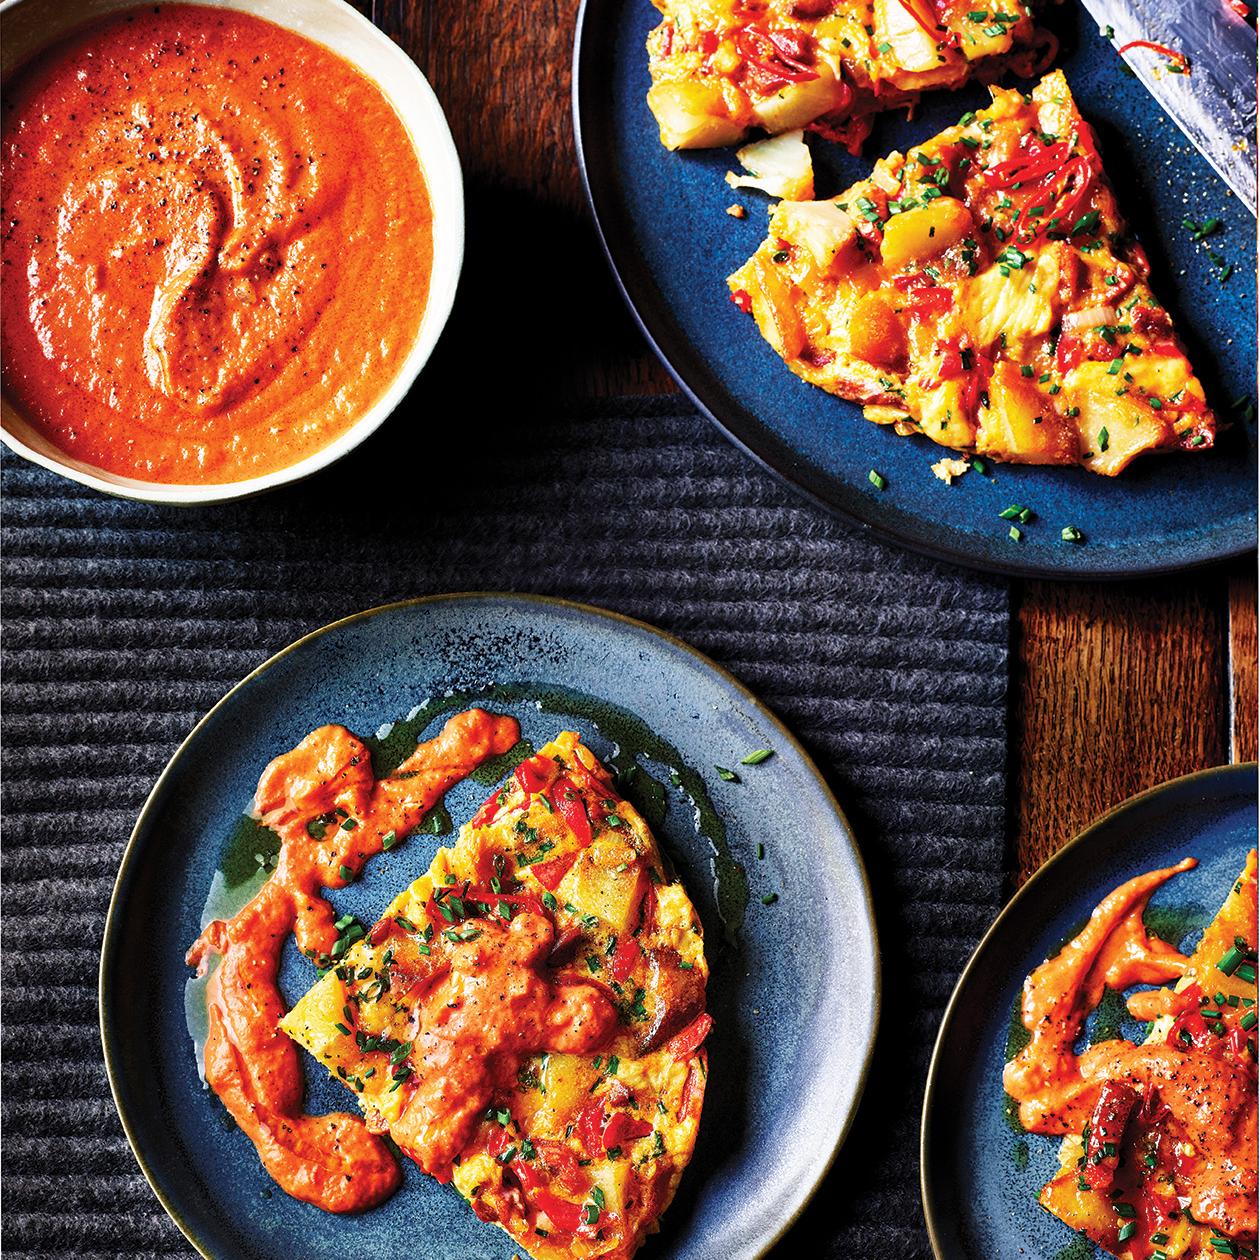 https://www.sainsburysmagazine.co.uk/uploads/media/1800x1800/00/8990-Spanish-omelette-with-tomato-sauce.jpg?v=1-0